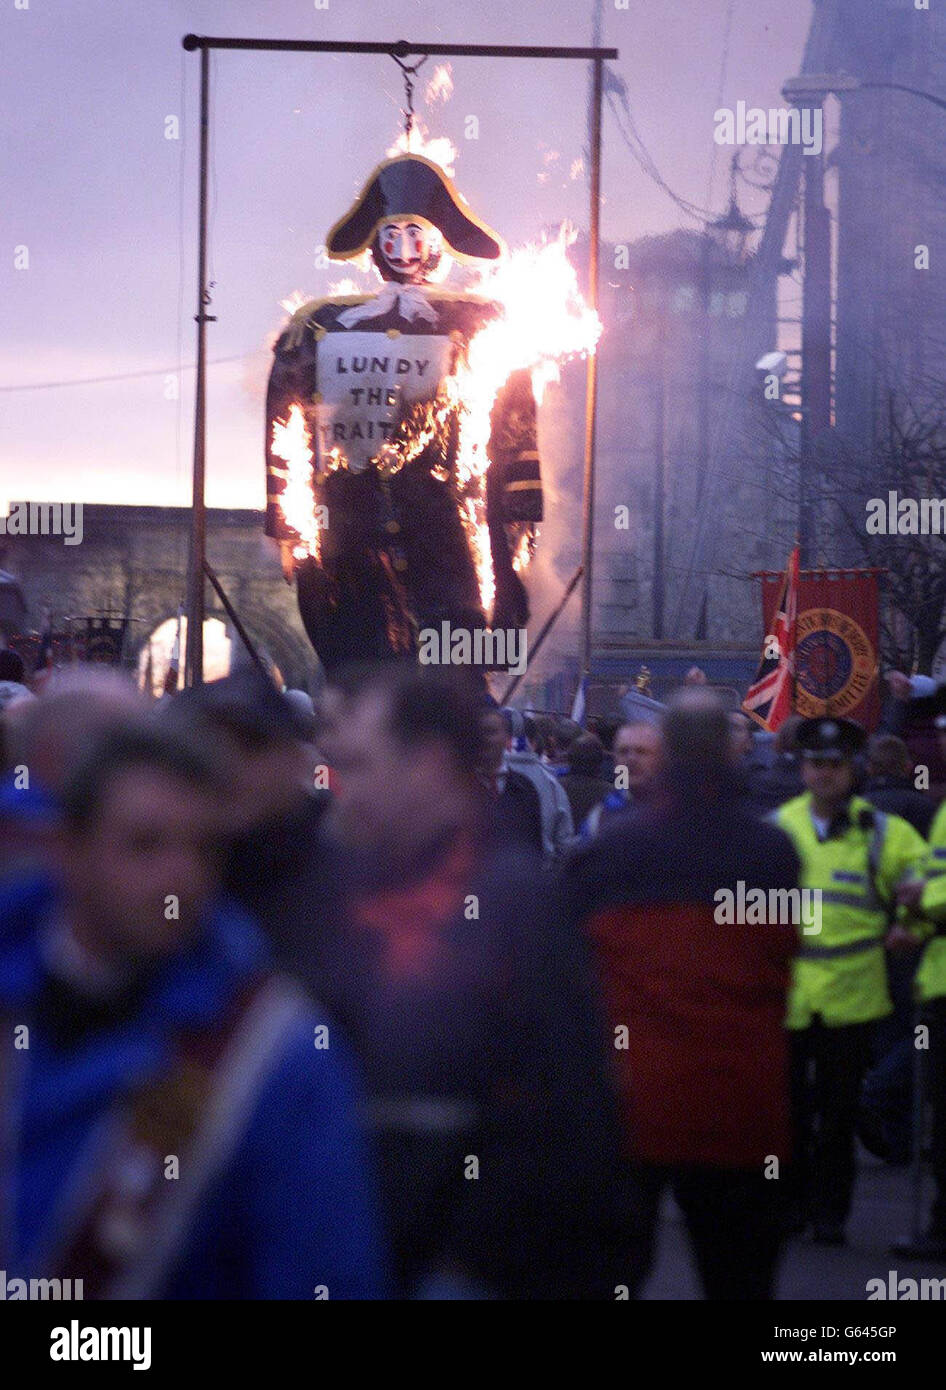 Les garçons d'Appremtice brûlent une effigie d'un traître protestant appelé Lundy à Londonderry, lors d'une parade des garçons d'Apprentice dans la ville. Banque D'Images